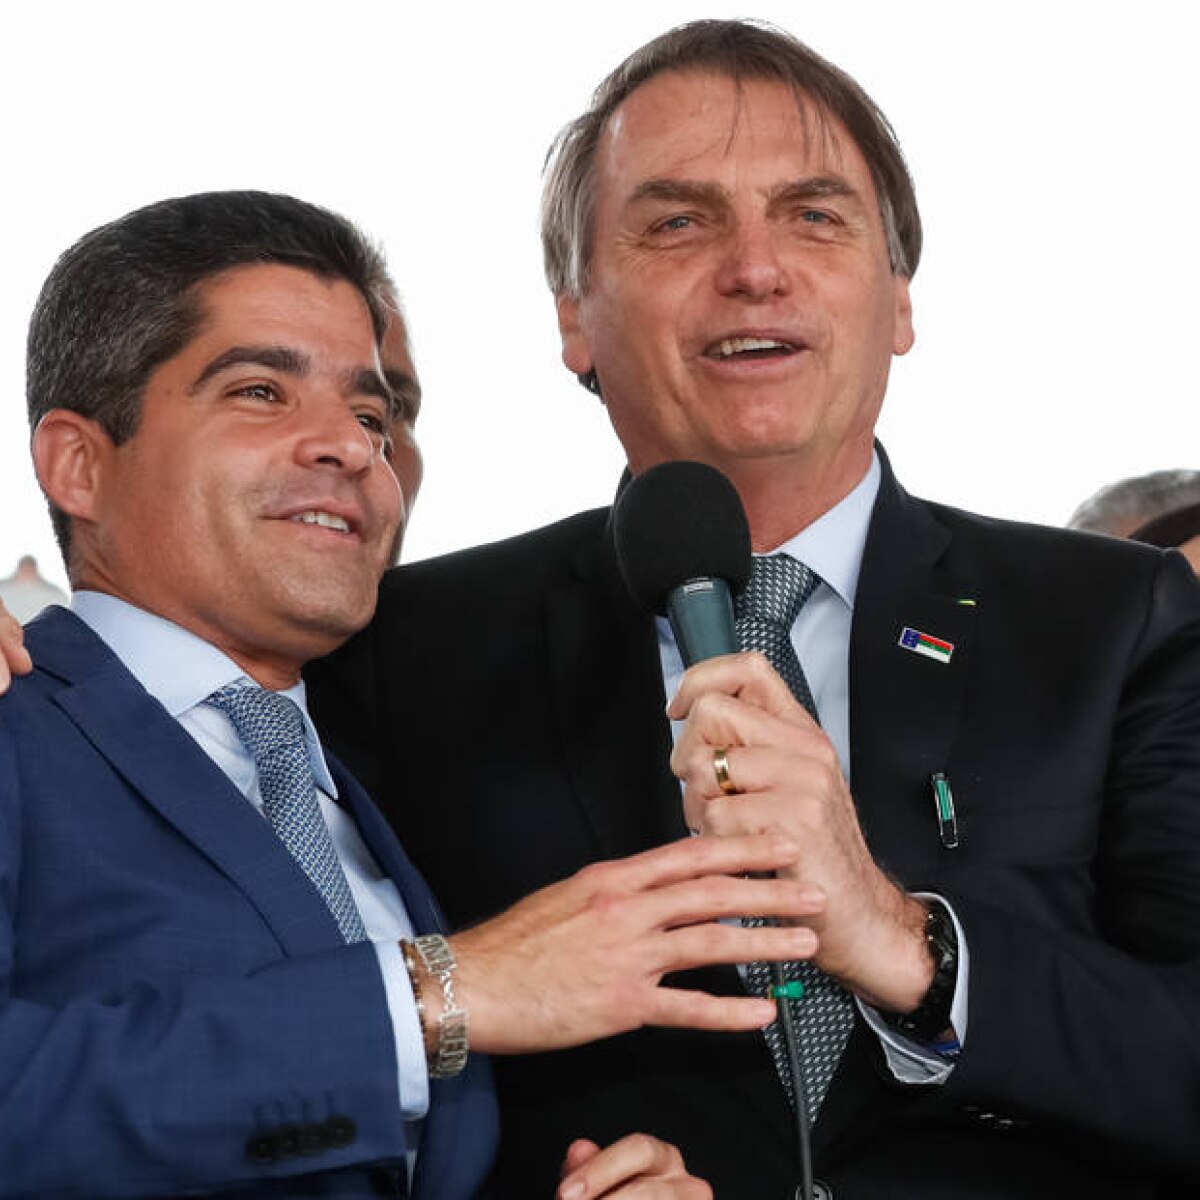 Com recusa de Rui Costa, Bolsonaro dá palanque a ACM Neto, maior adversário  do PT na Bahia - Política - Estadão